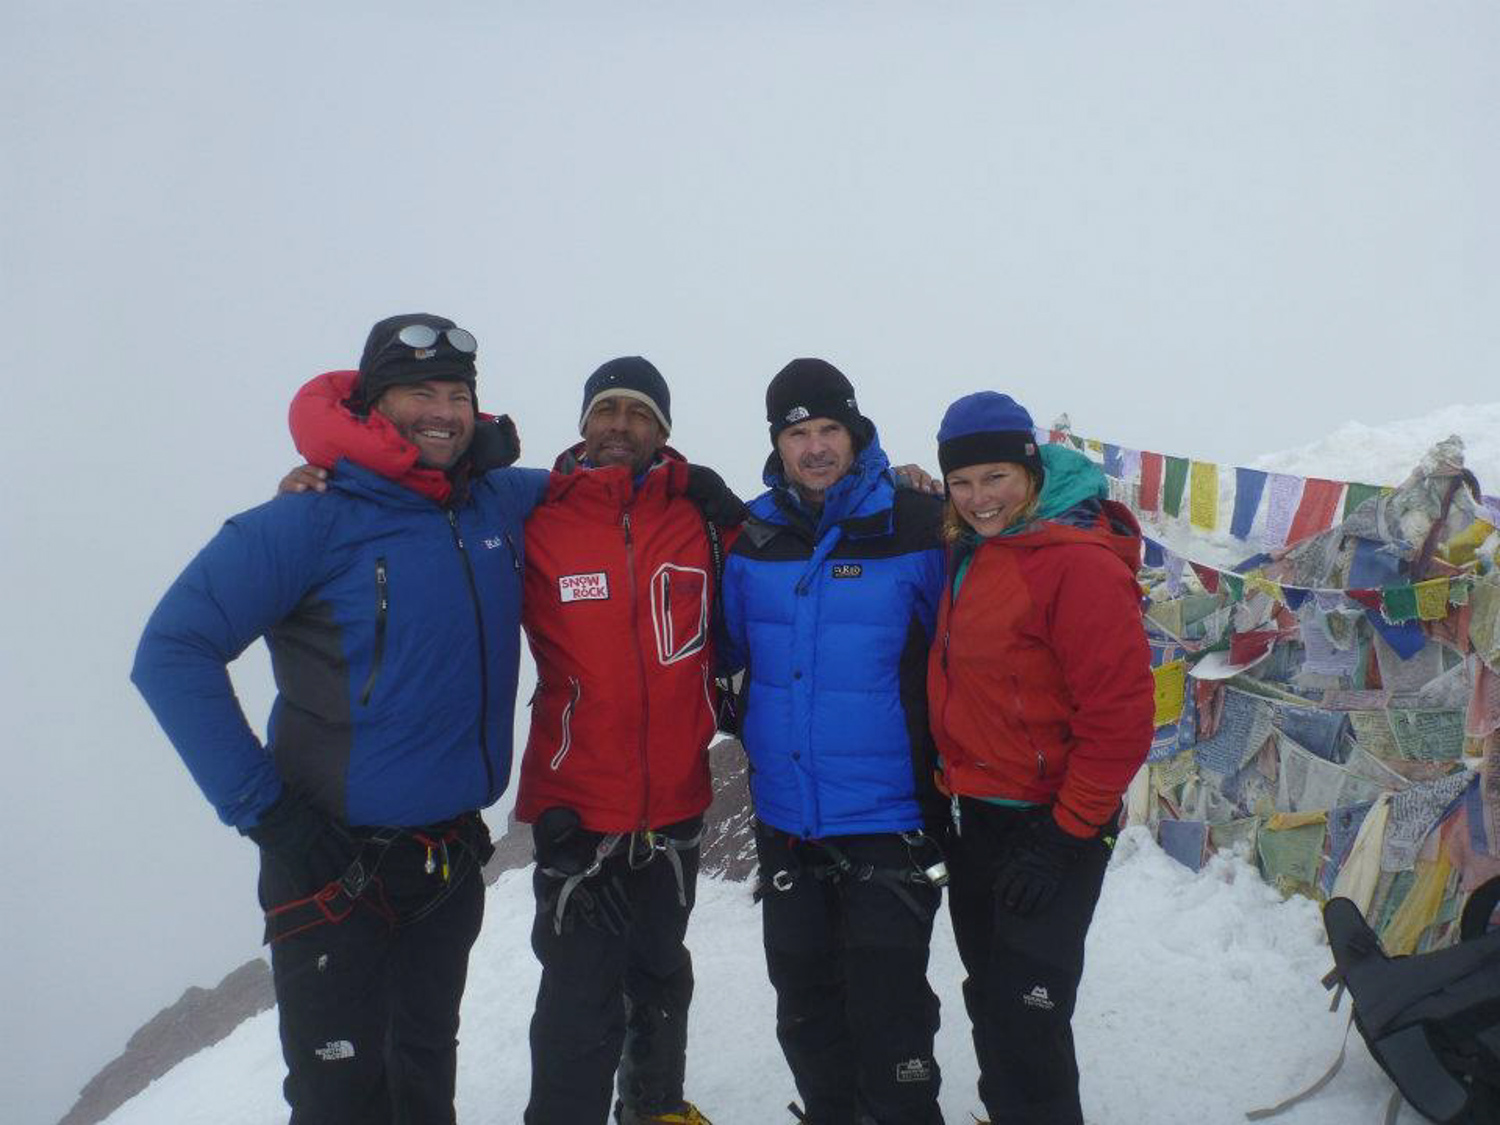  With the Marlborough College crew in Ladakh 